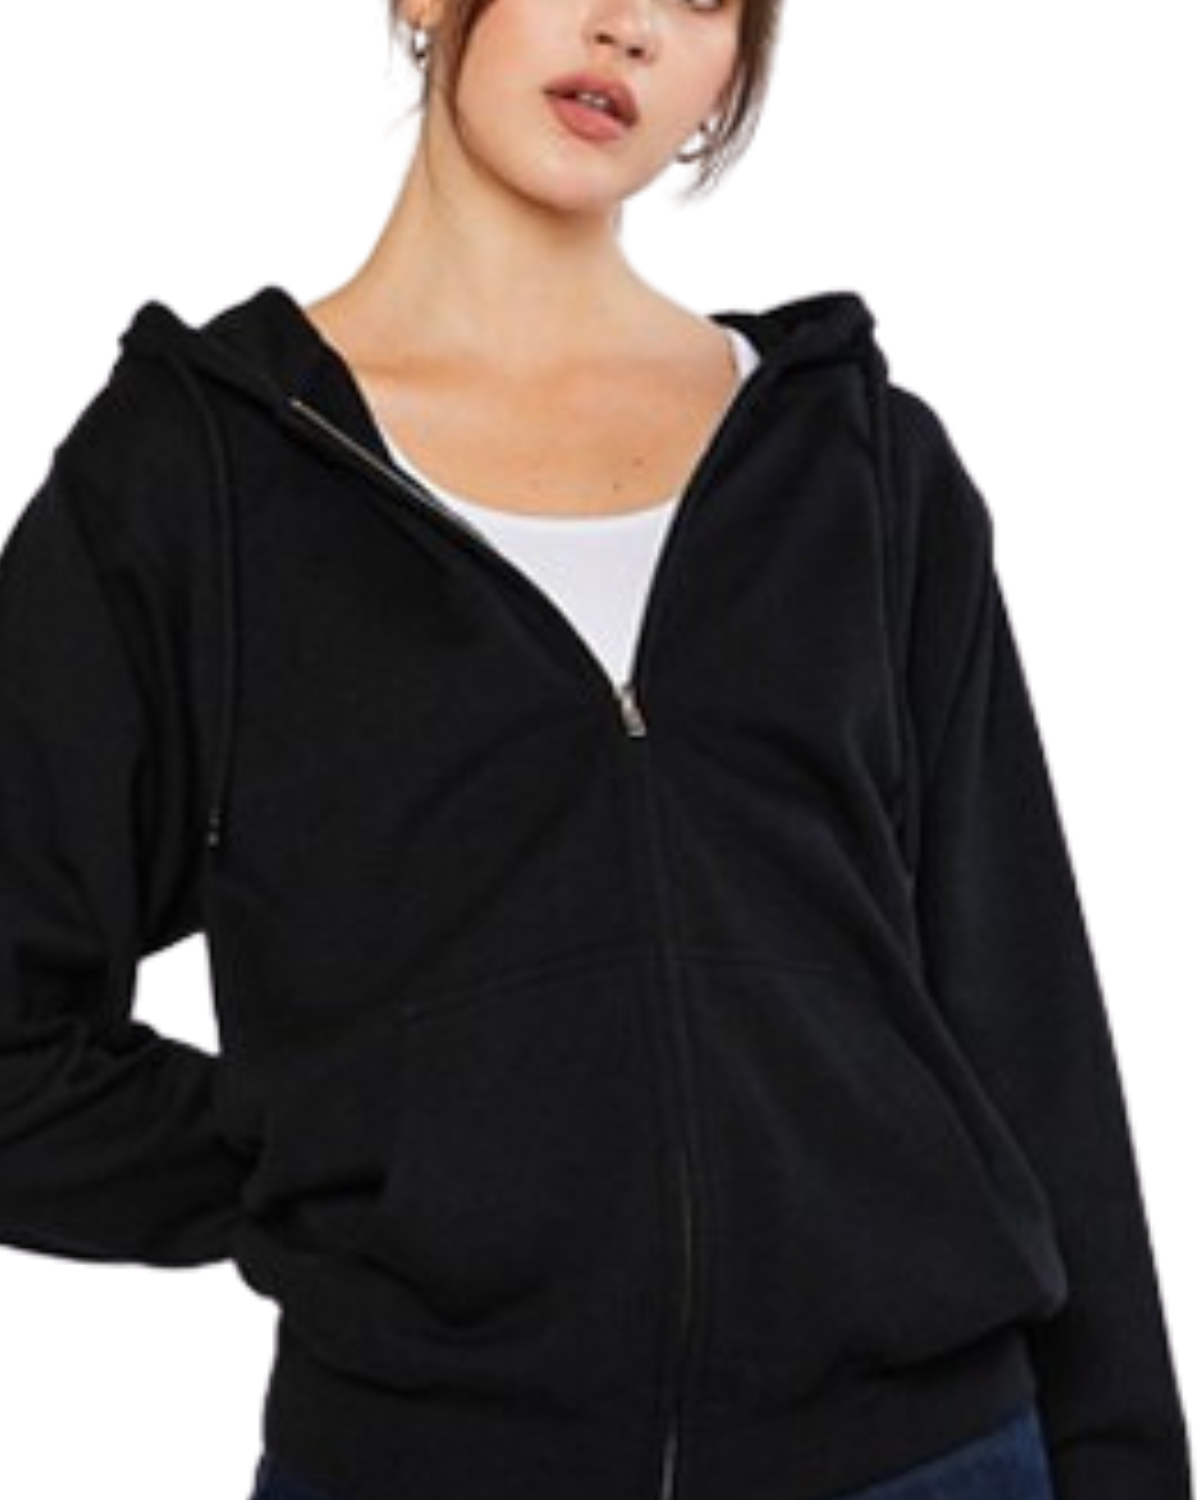 Model on a white backdrop wearing a women's oversized fleece zip up hooded sweater in solid black